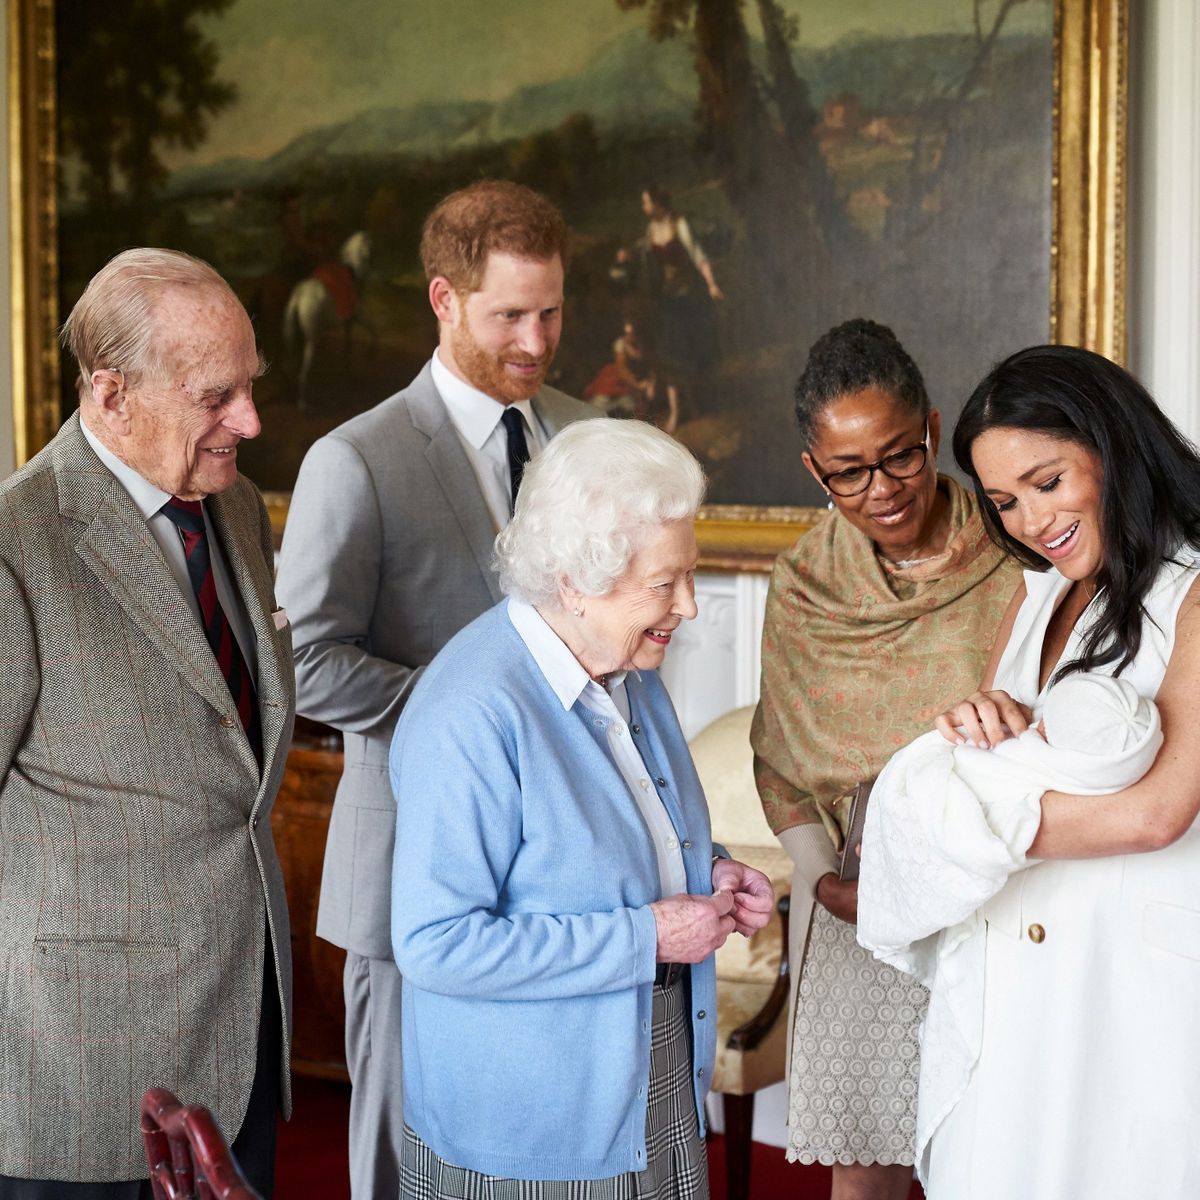 Briti prints Harry ja ta naine, Sussexi hertsoginna Meghan tutvustamas Doria Raglandile, kuninganna Elizabeth II ja prints Philipile oma poega Archie Harrison Mountbatten-Windsorit